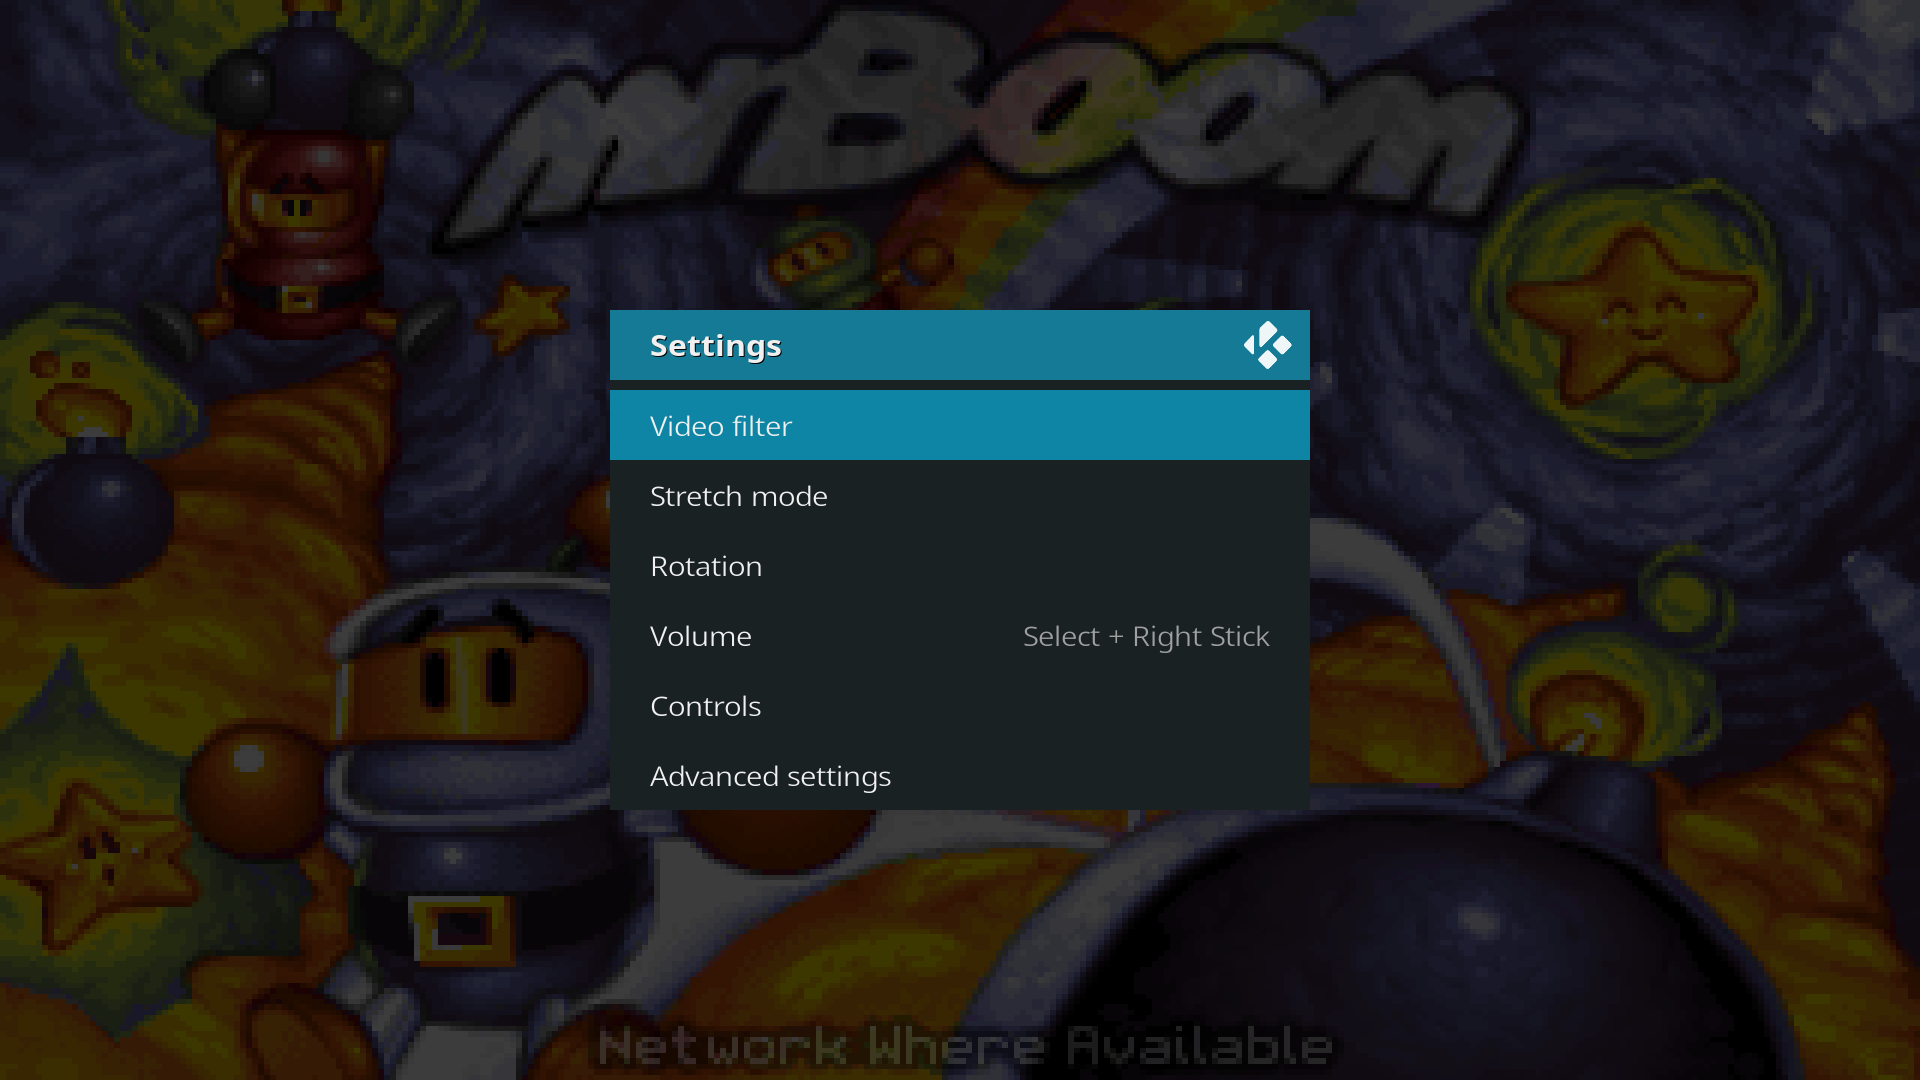 The game settings menu